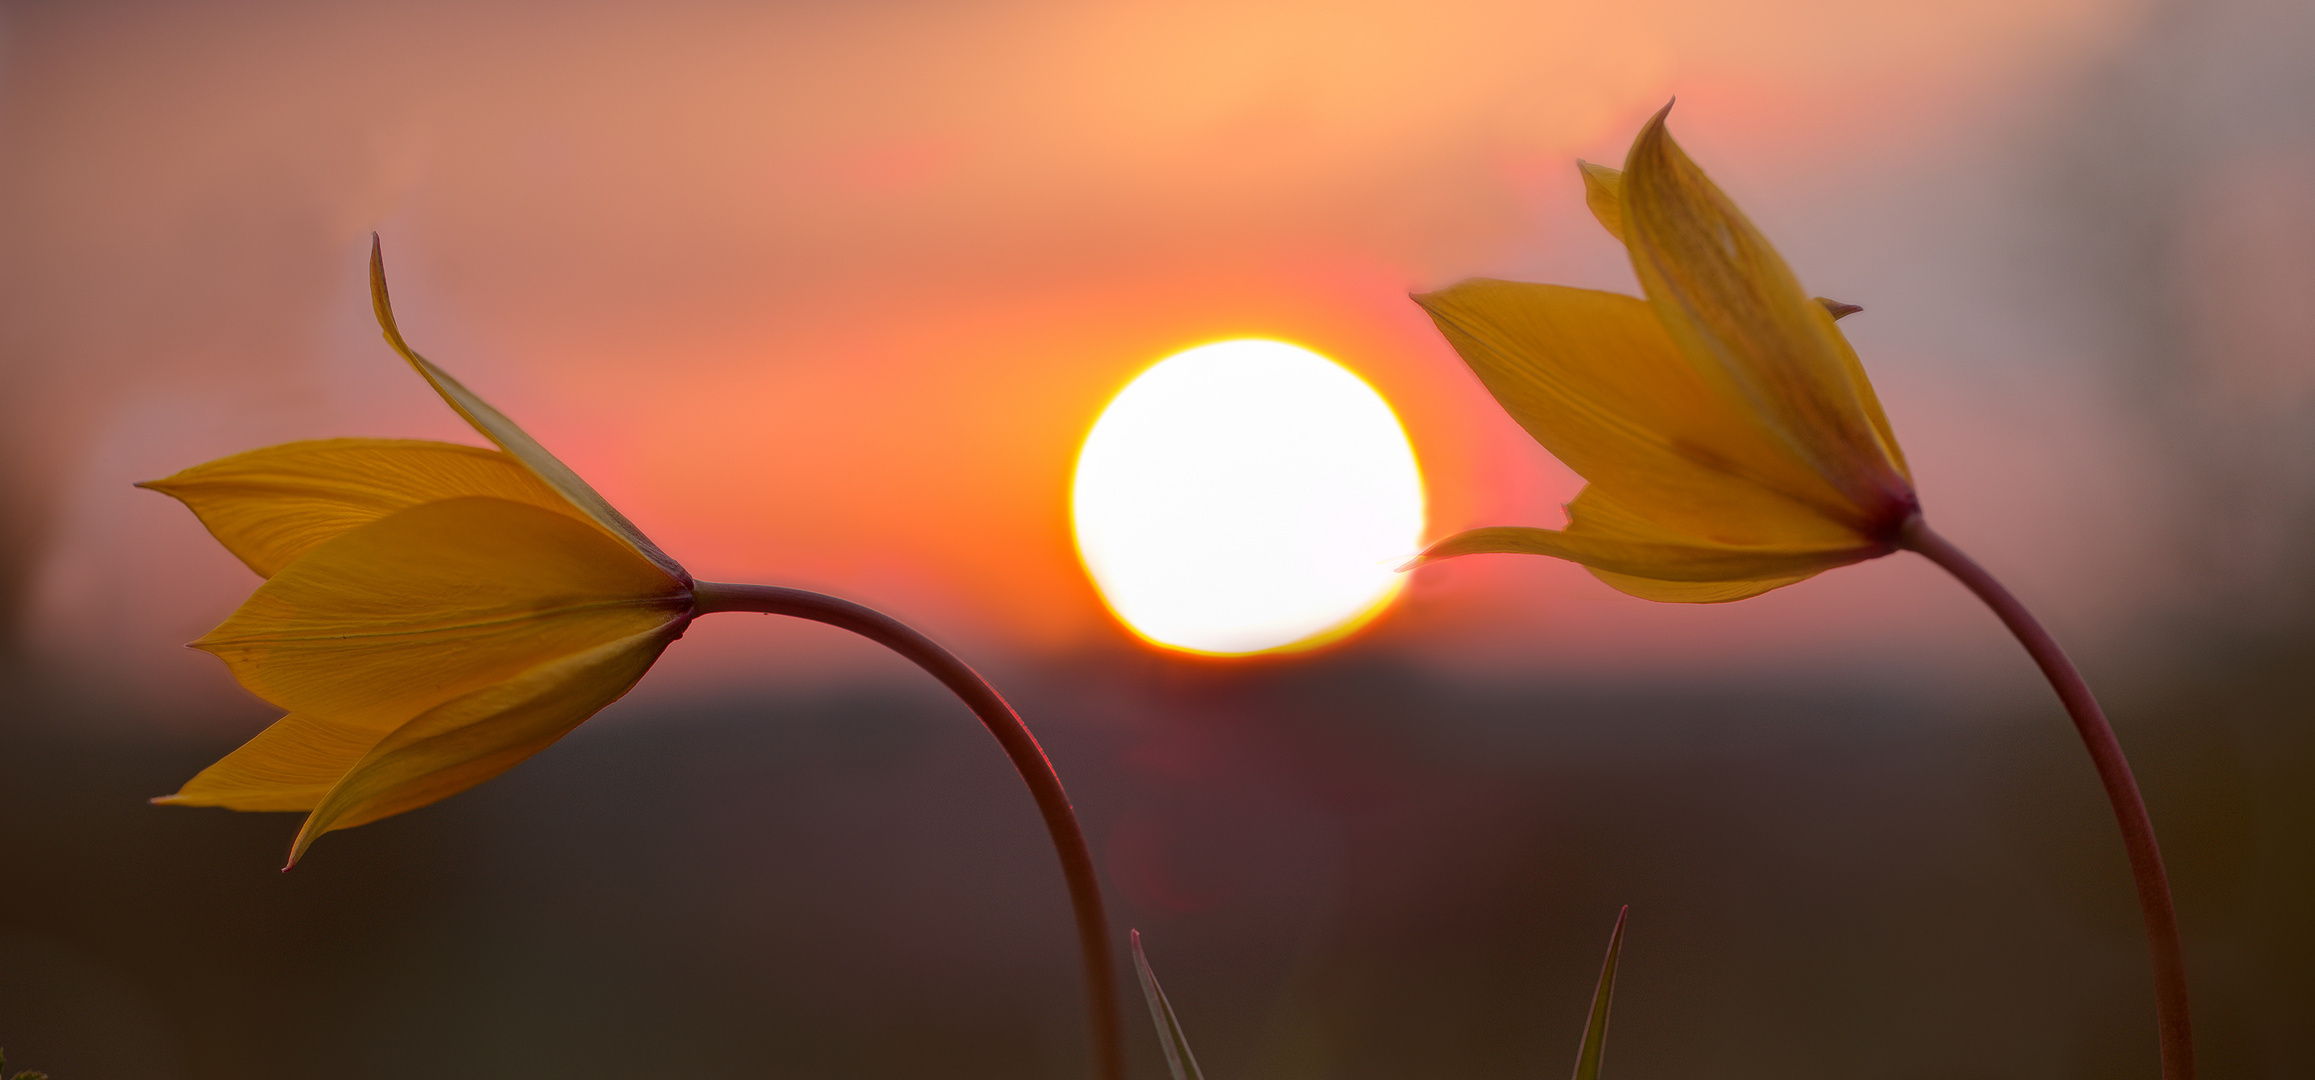 Wilde Tulpe (10) mit untergehender Sonne